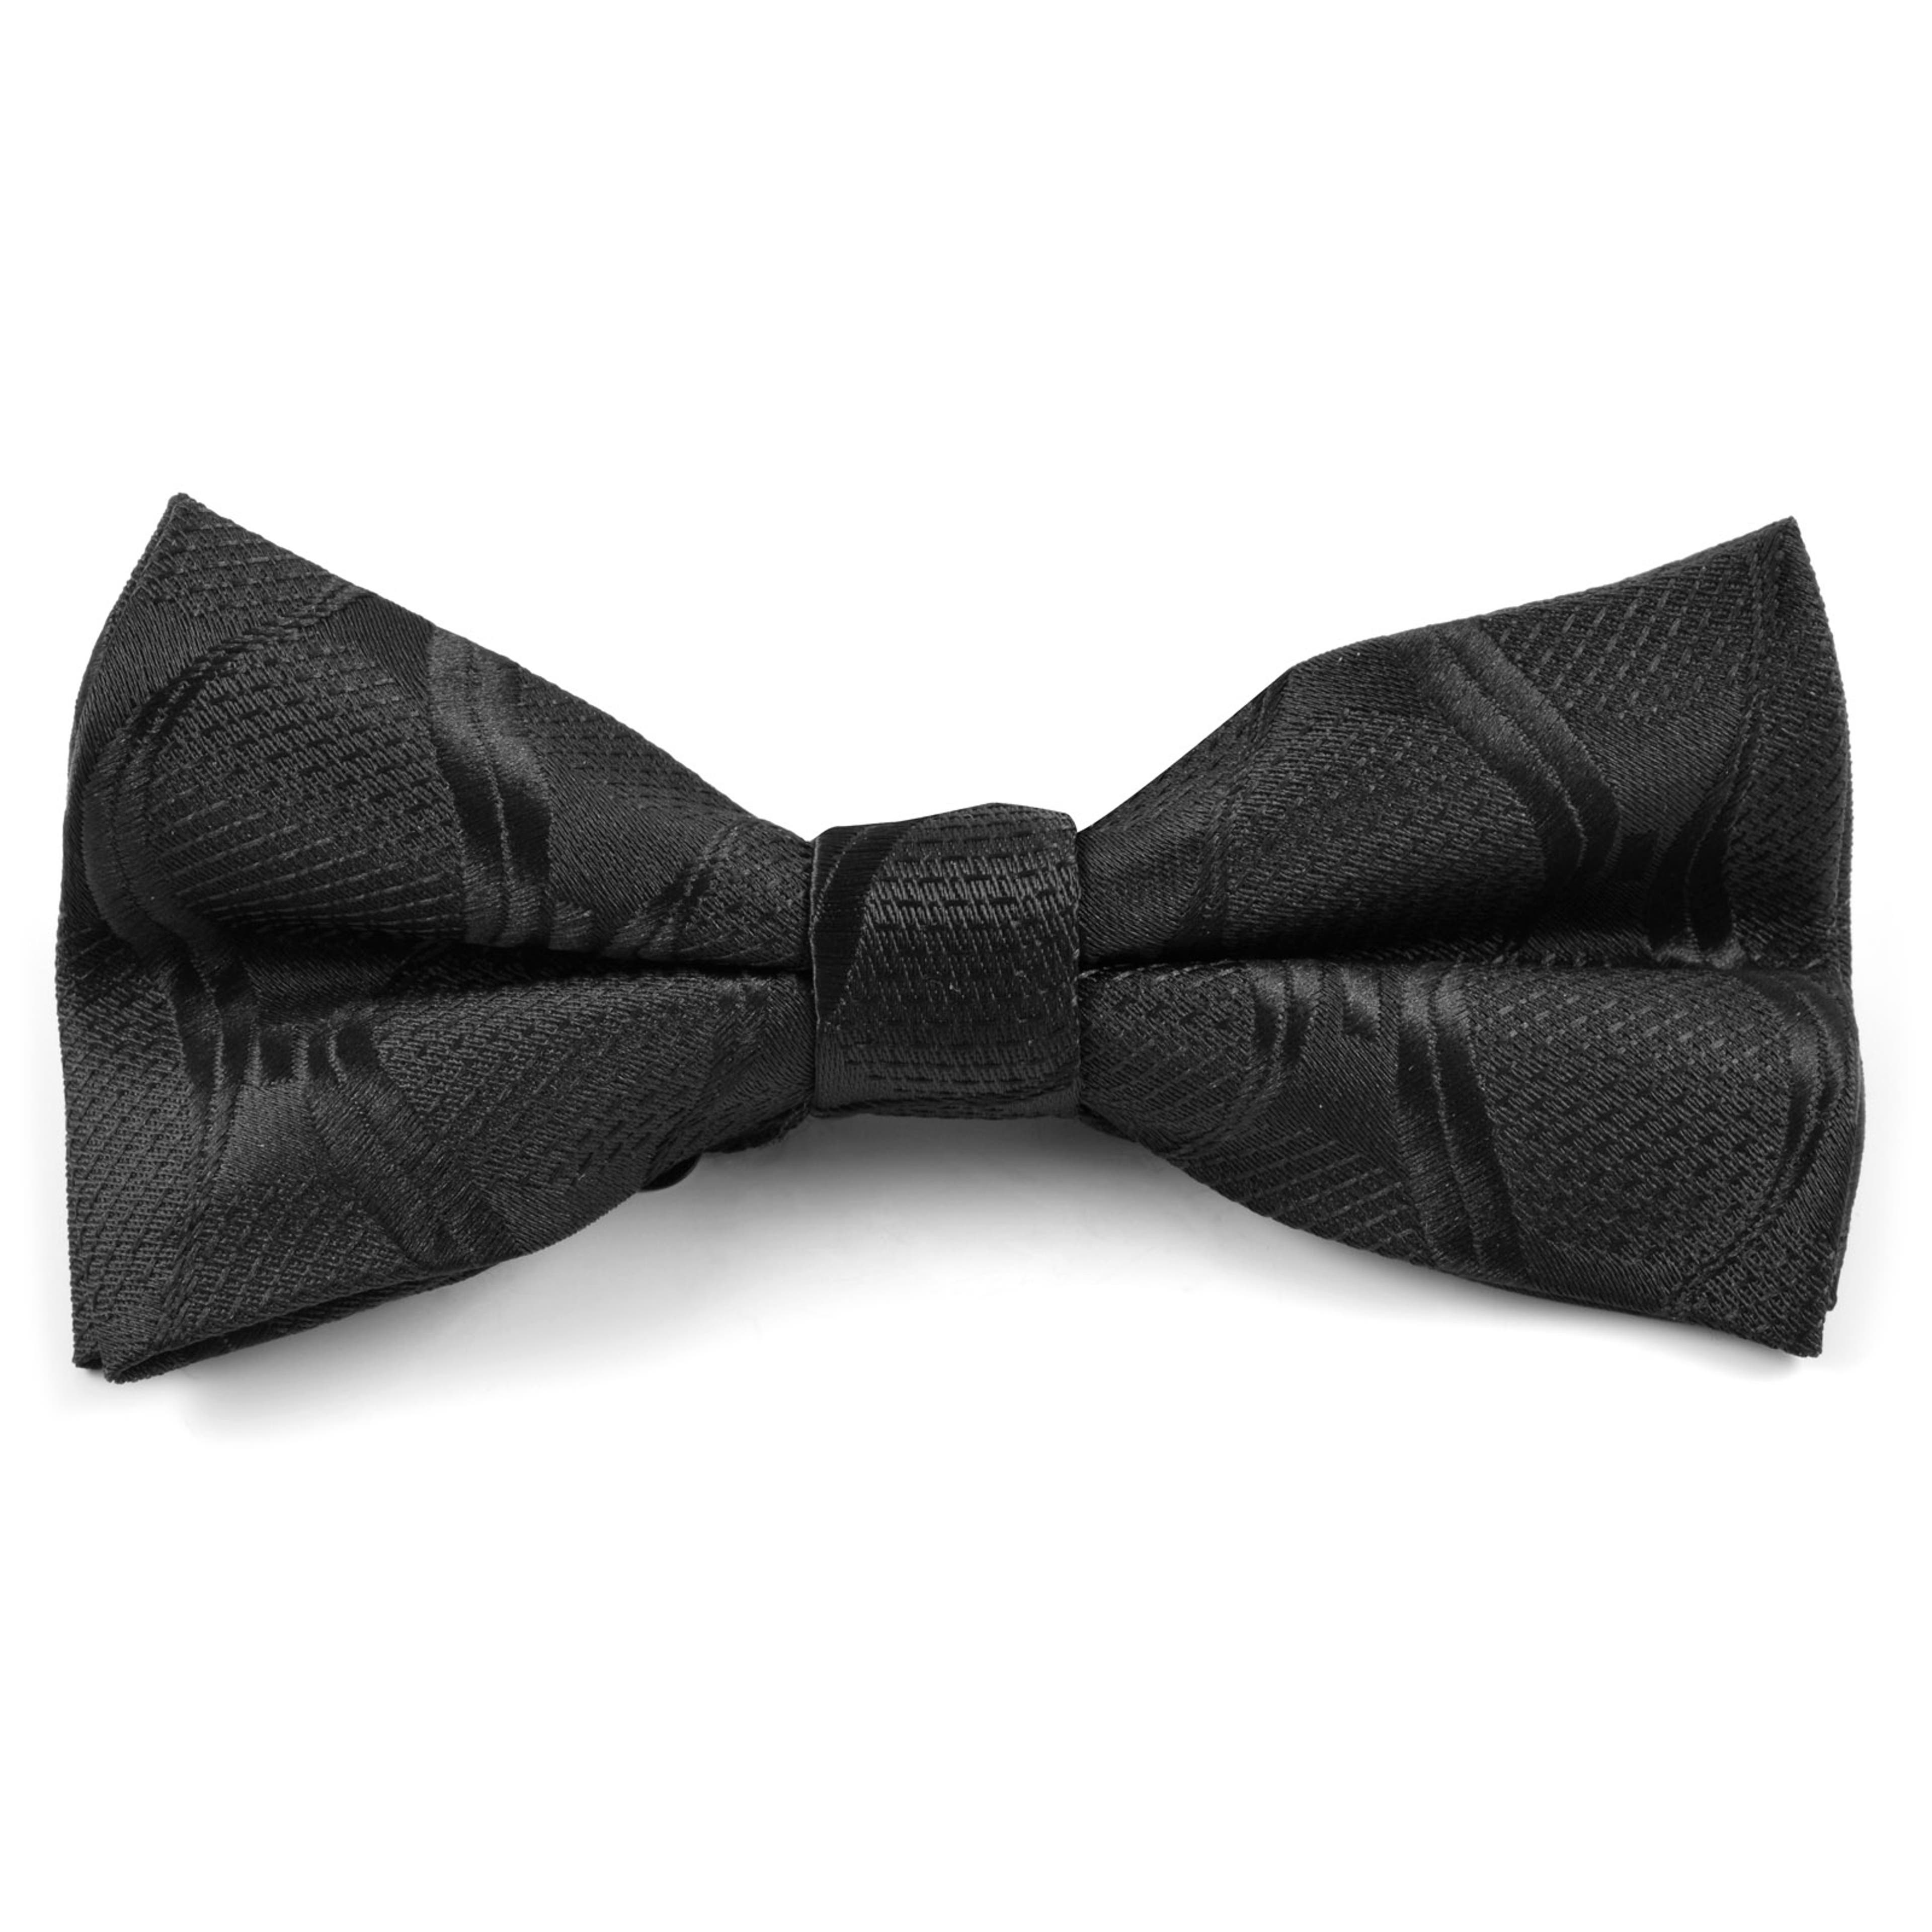 Black Pre-Tied Bow Tie